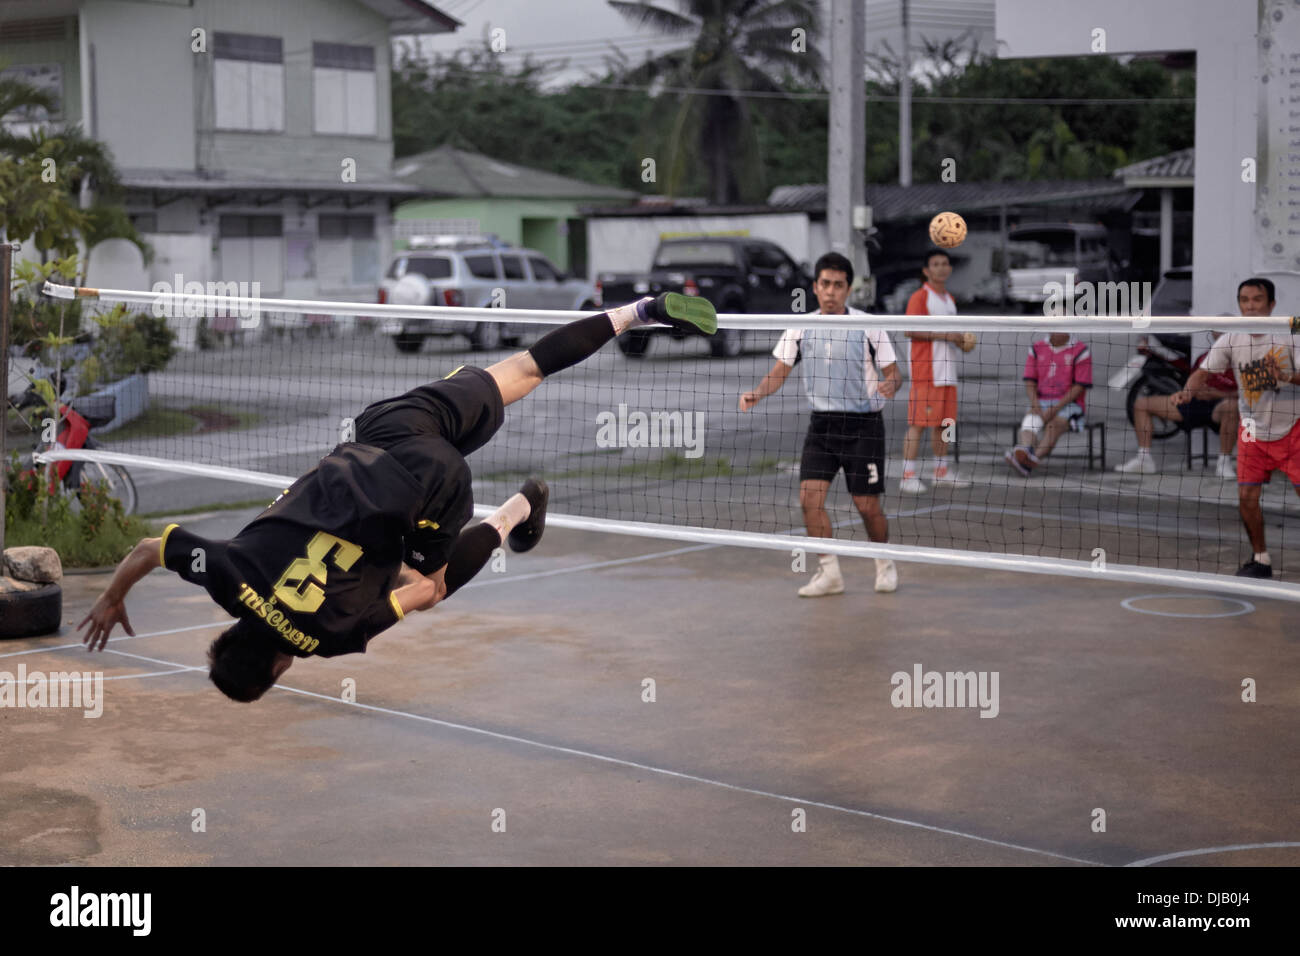 Extreme Sportlichkeit während eines Spiels von Sepak Takraw. Traditionelle und beliebte thailändische Fußballspiel. S. E. Asien Thailand Stockfoto